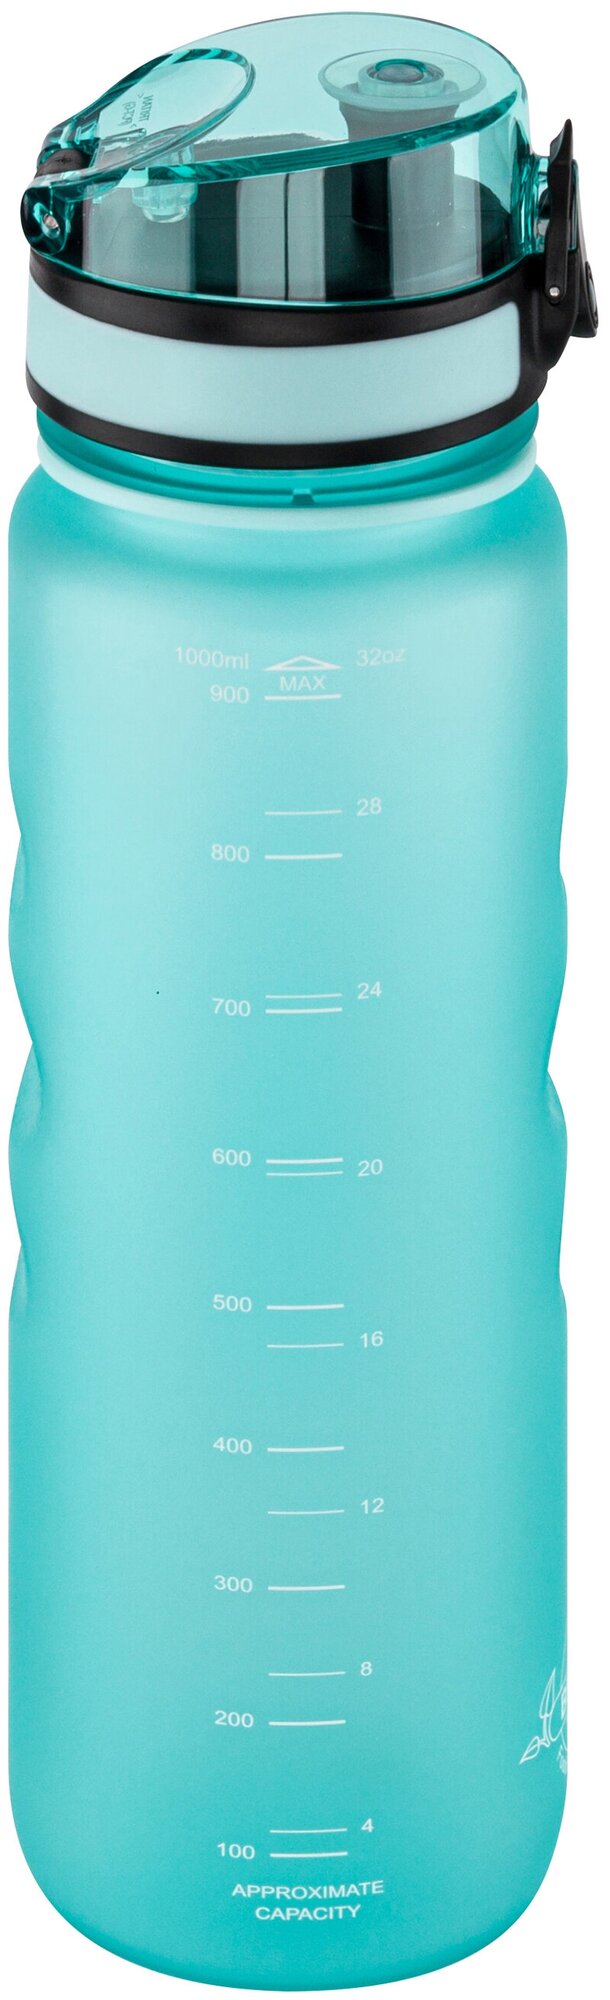 Бутылка для воды / спортивная бутылка / питьевая бутылка / для холодных и горячих напитков 1000 мл 7,8х7,8х28,5 см Elan Gallery Style Matte, аквамарин